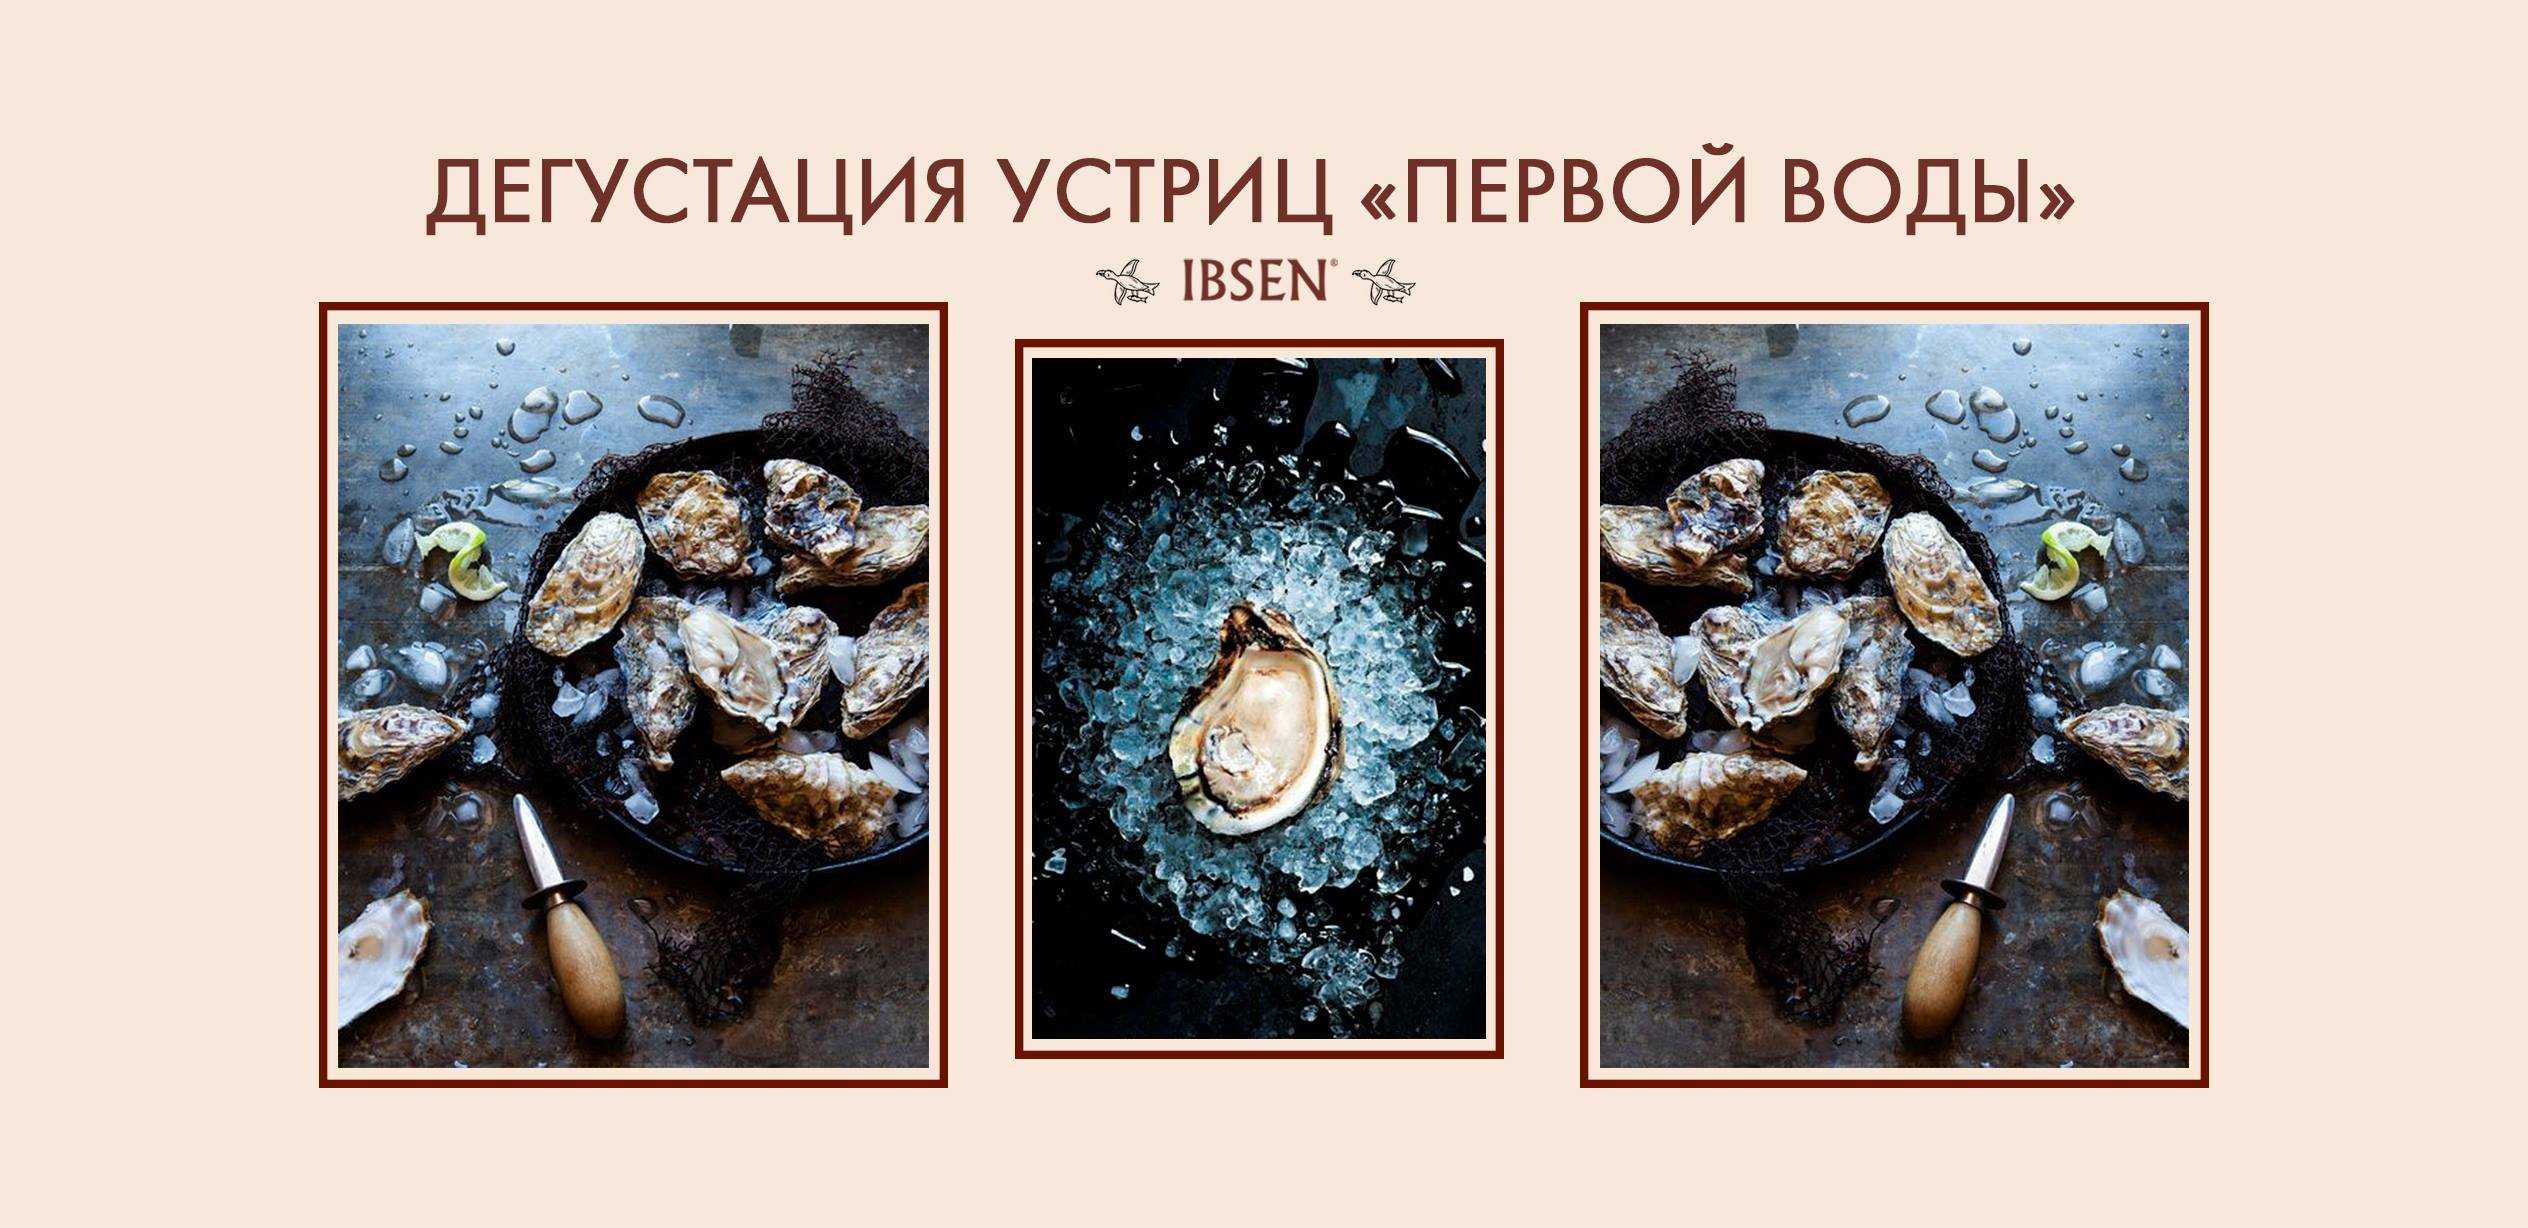 Устрицы — группа двустворчатых моллюсков